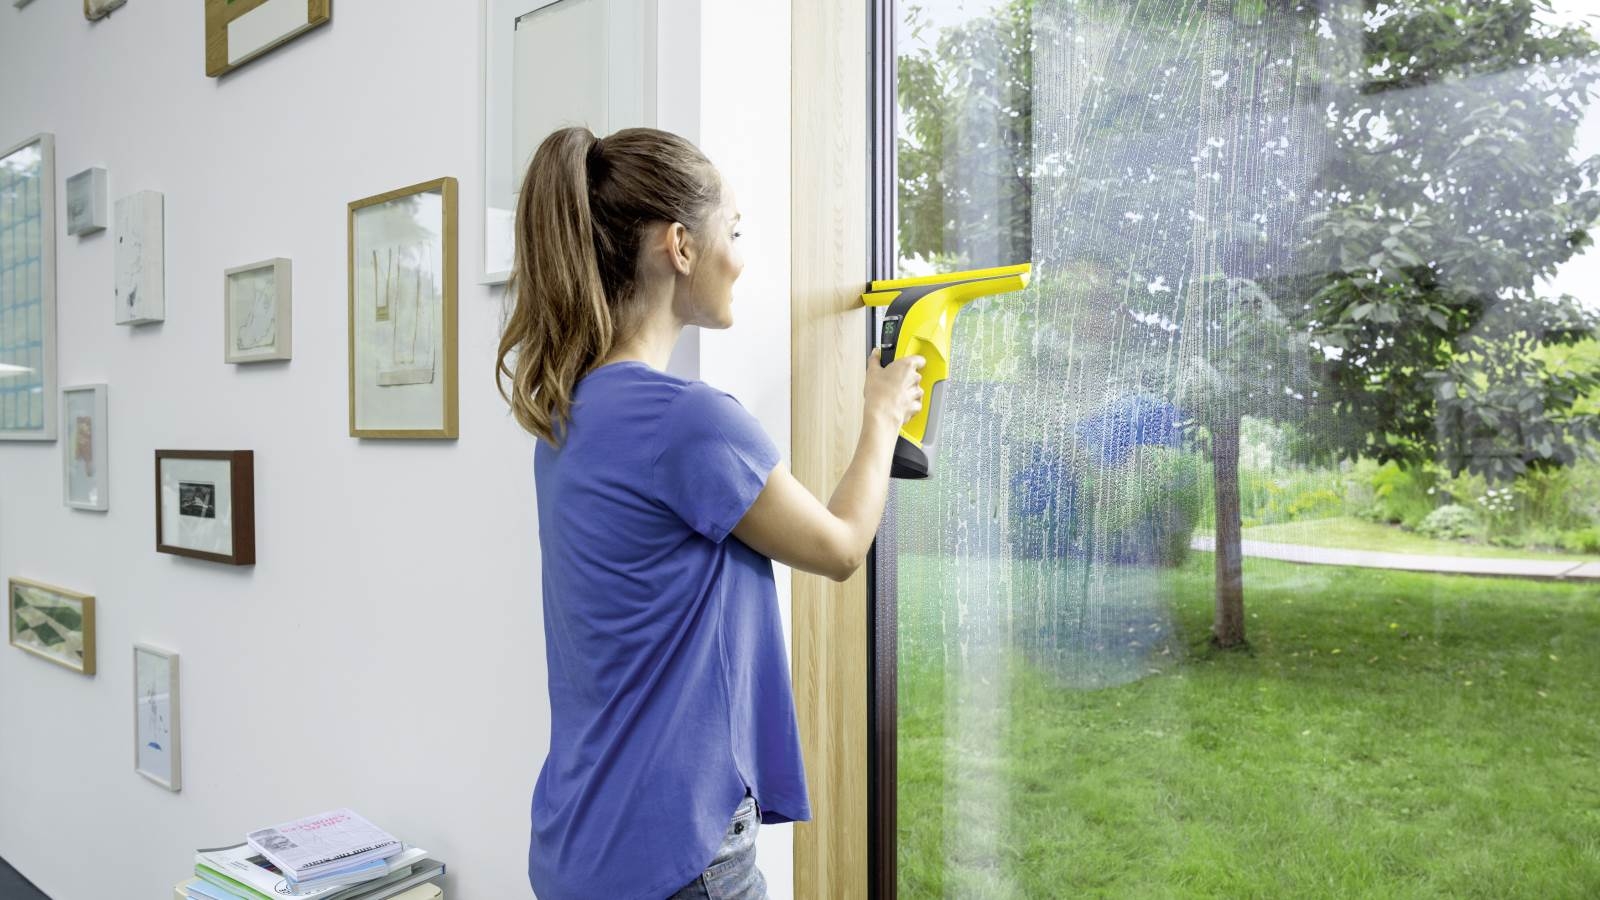 Clean мытье окон. Для мойки окон приспособления. Мытье окон. Чистые окна. Мойка окон в квартире.